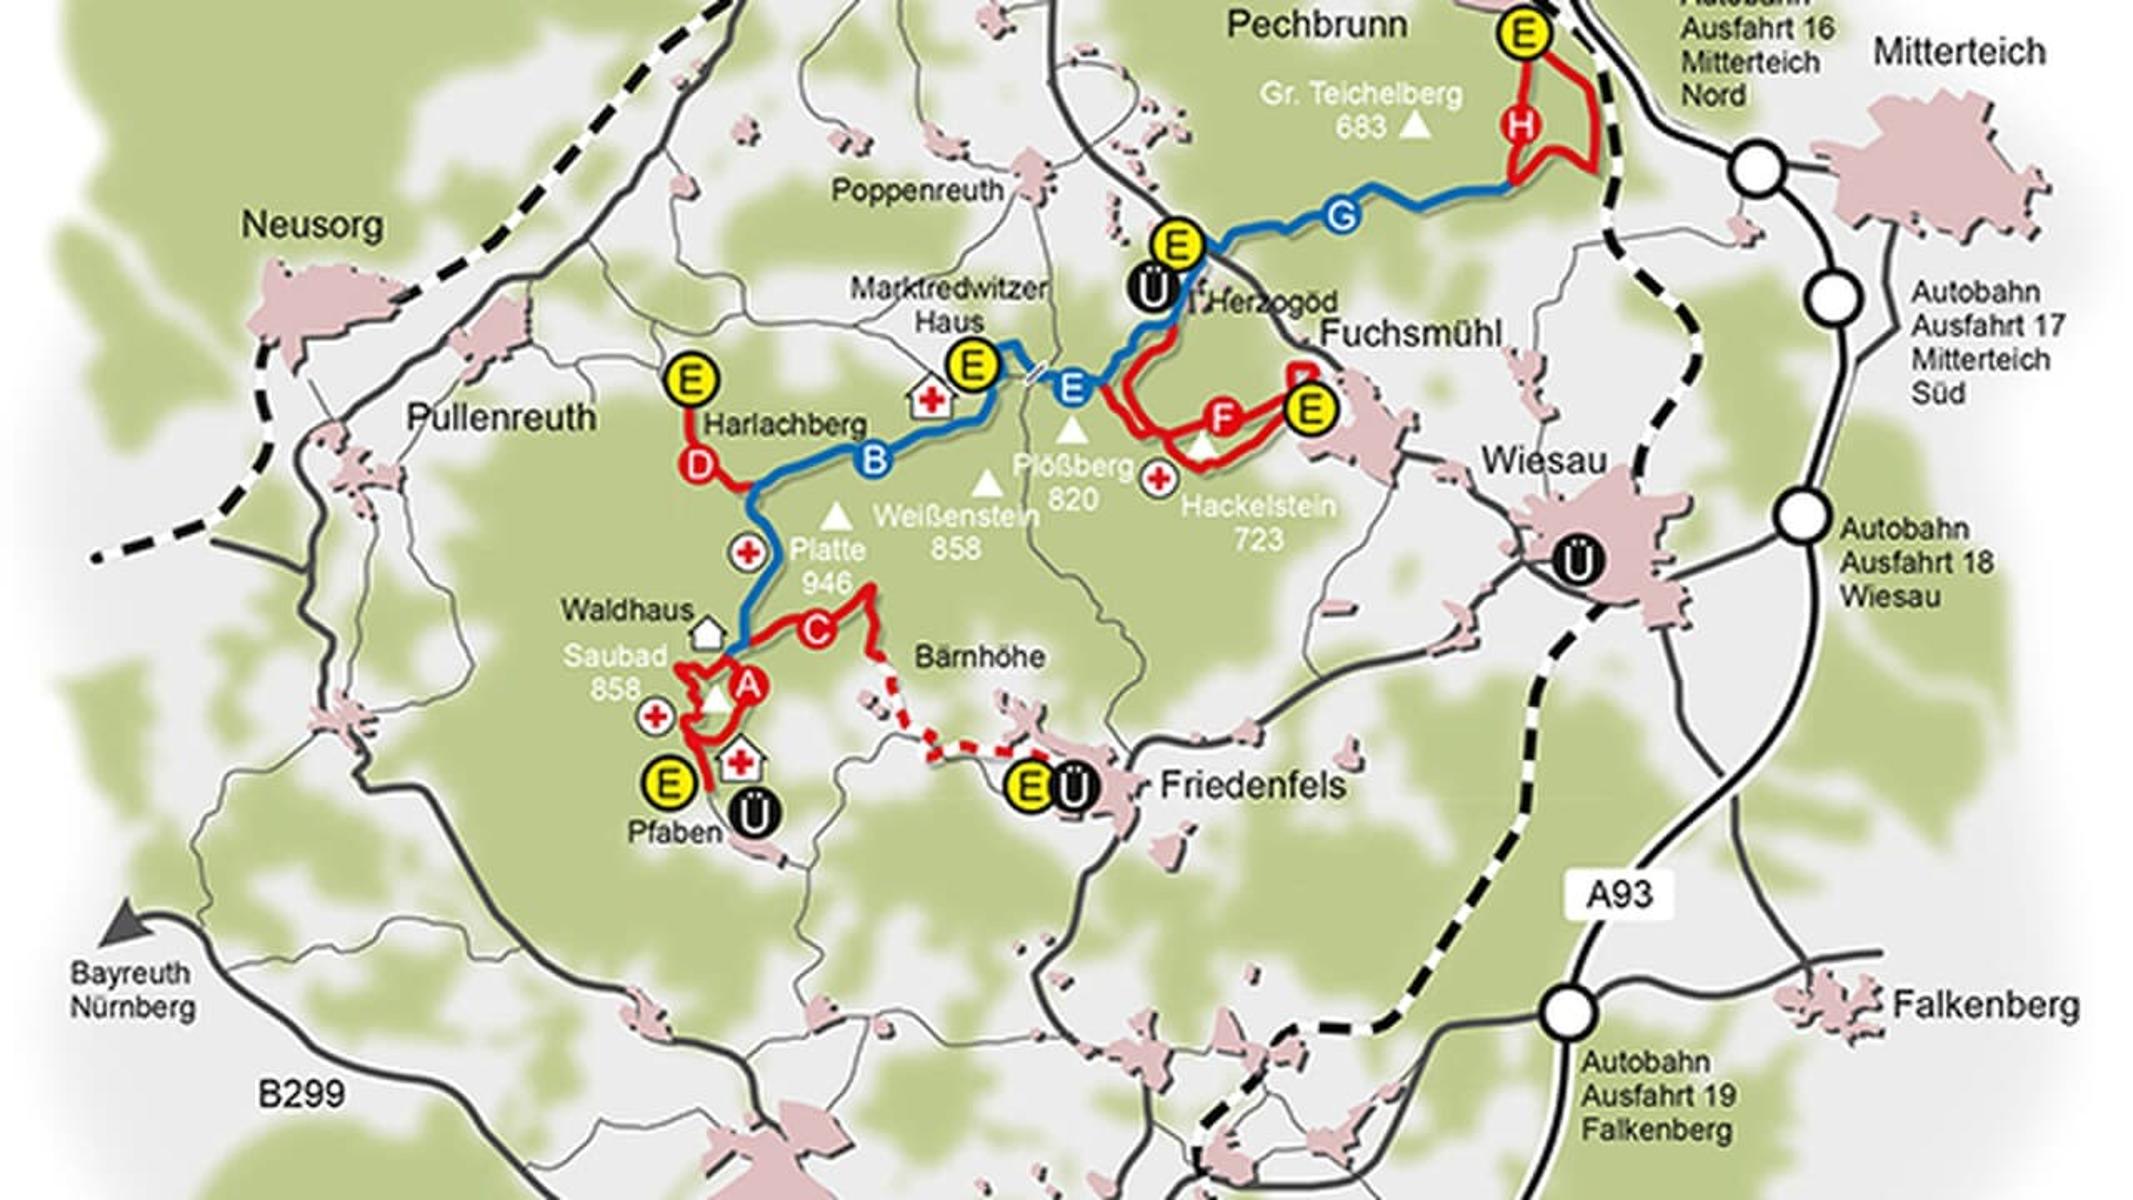 DieseZubringerloipe zum Skihauptwanderweg des Naturparks Steinwald ist in zweiEtappen unterteilt. Er beginnt in Friedenfels und führt zum Parkplatz inBärnhöhe (7 km), der zweite Teil geht dann weiter zum Waldhaus bei Pfaben(Einstieg Skihauptwanderweg). 